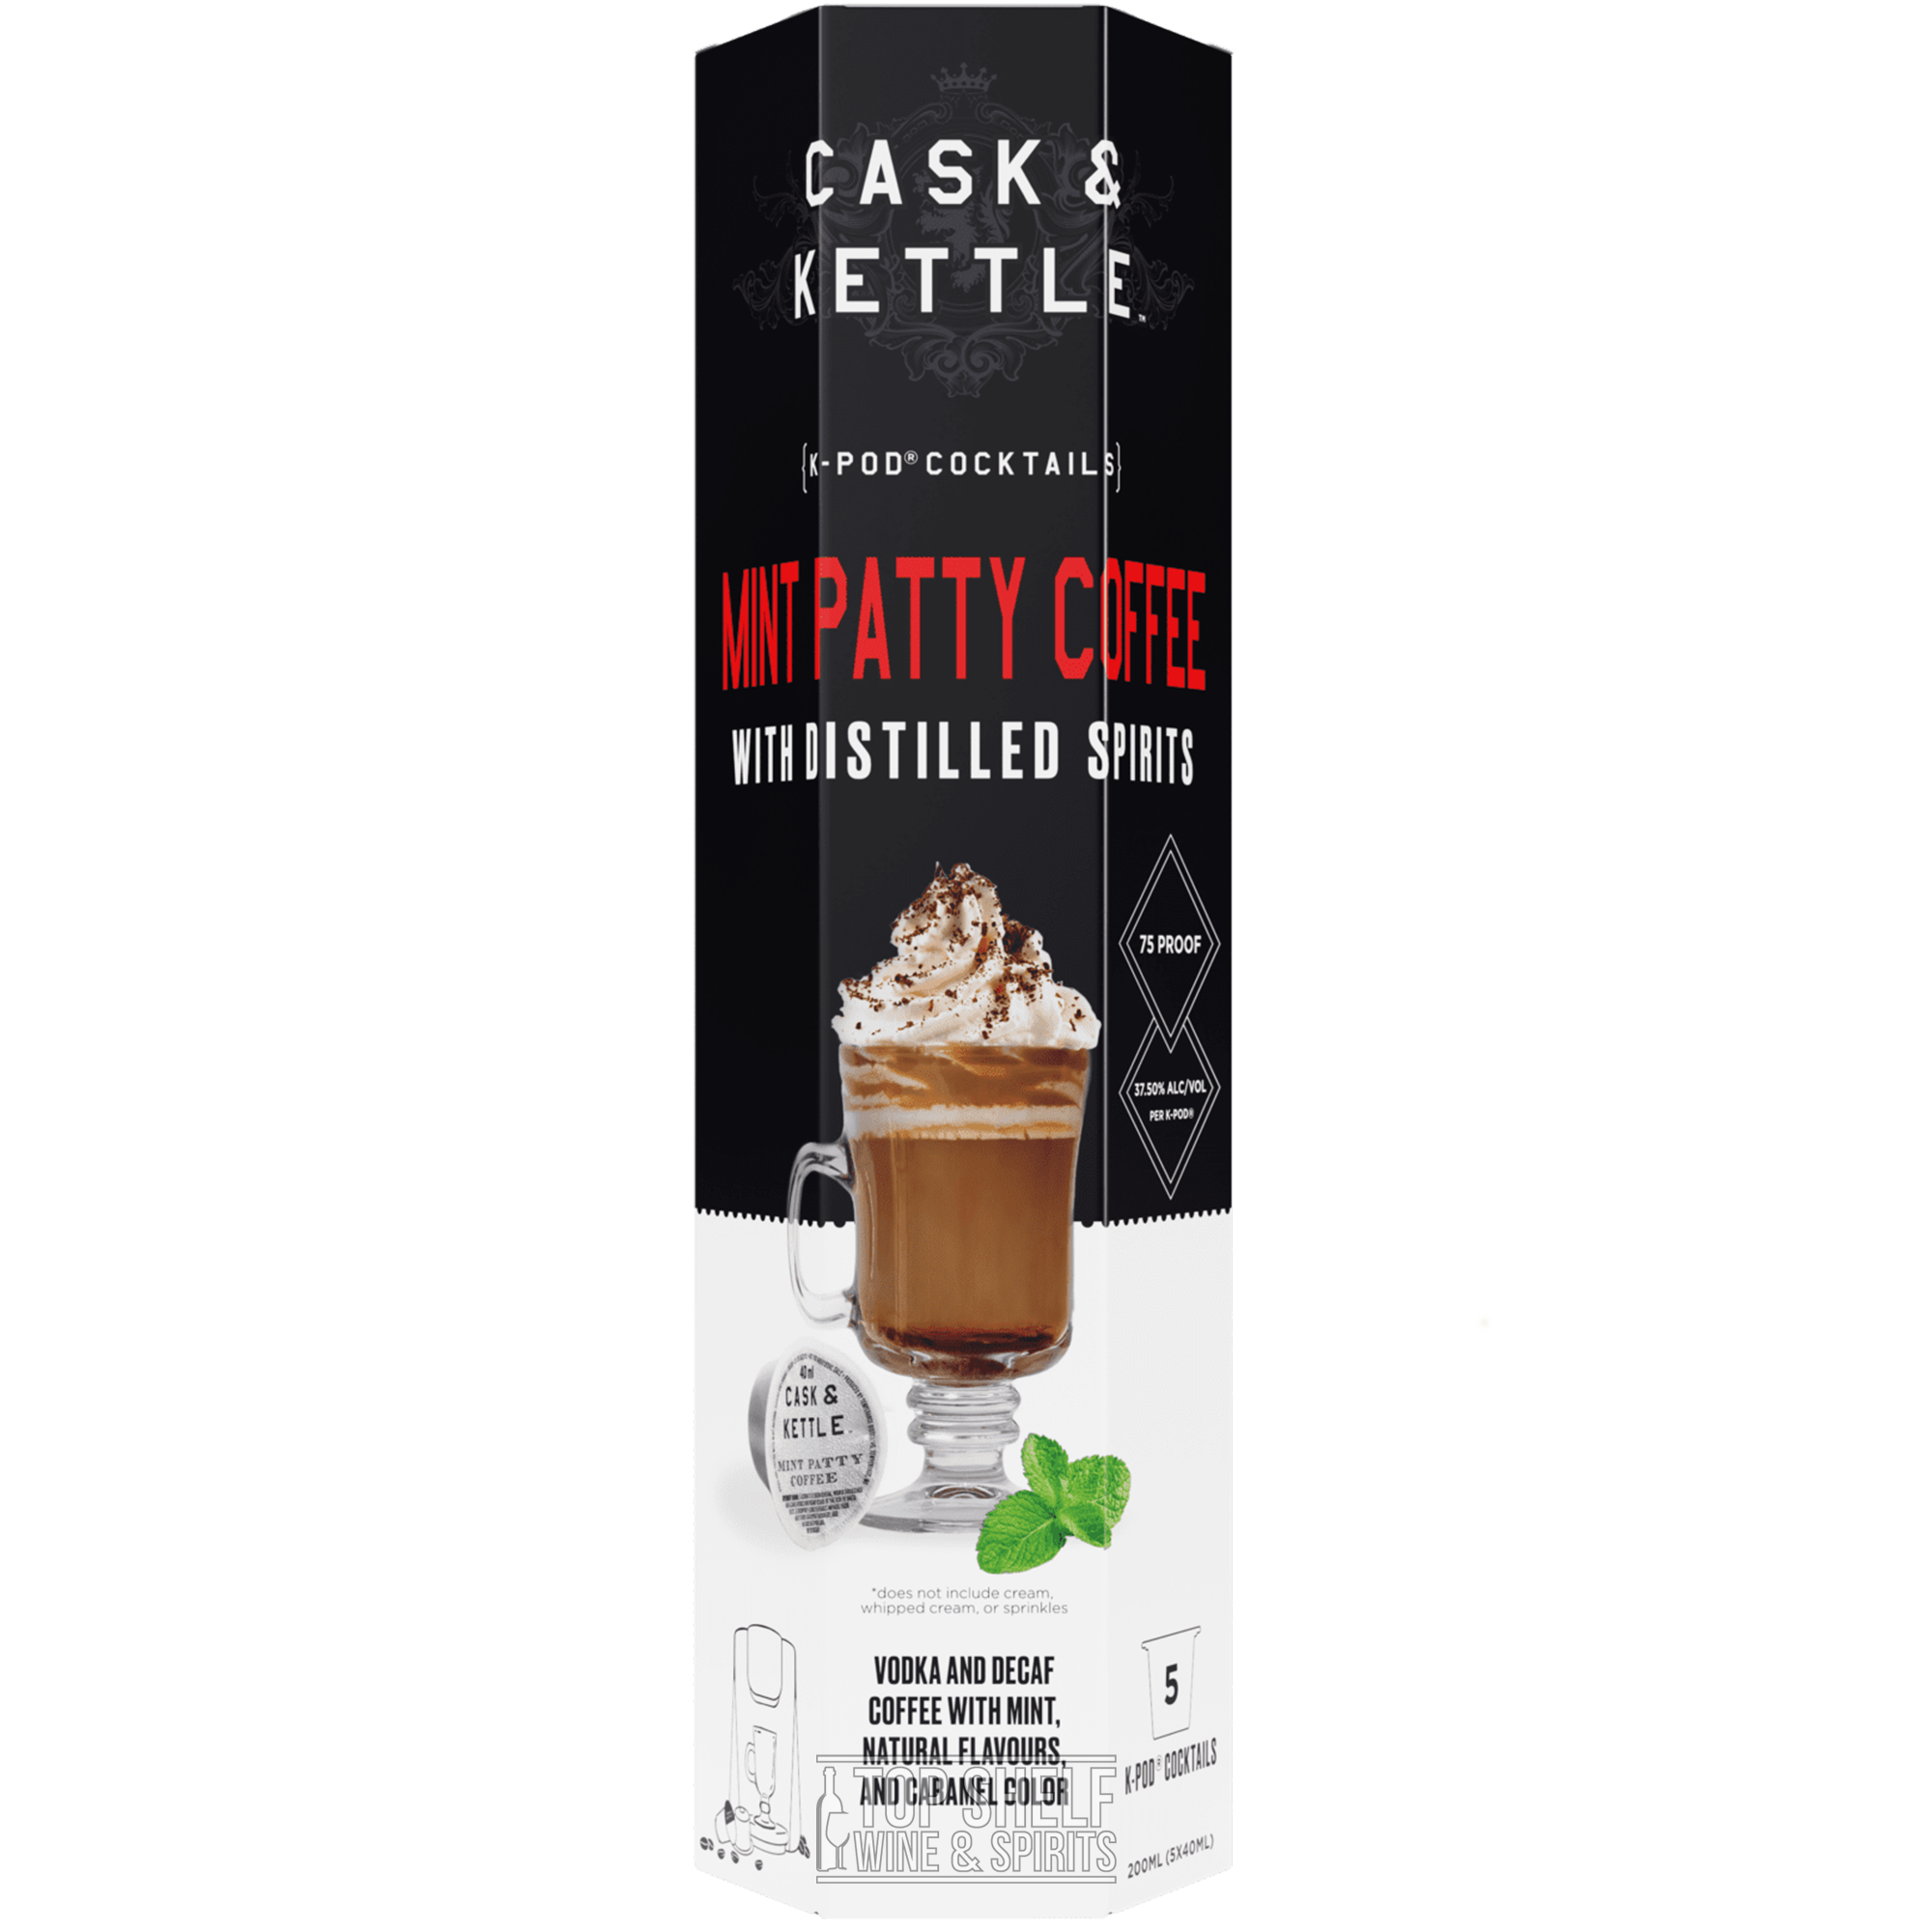 Cask & Kettle Mint Patty Coffee